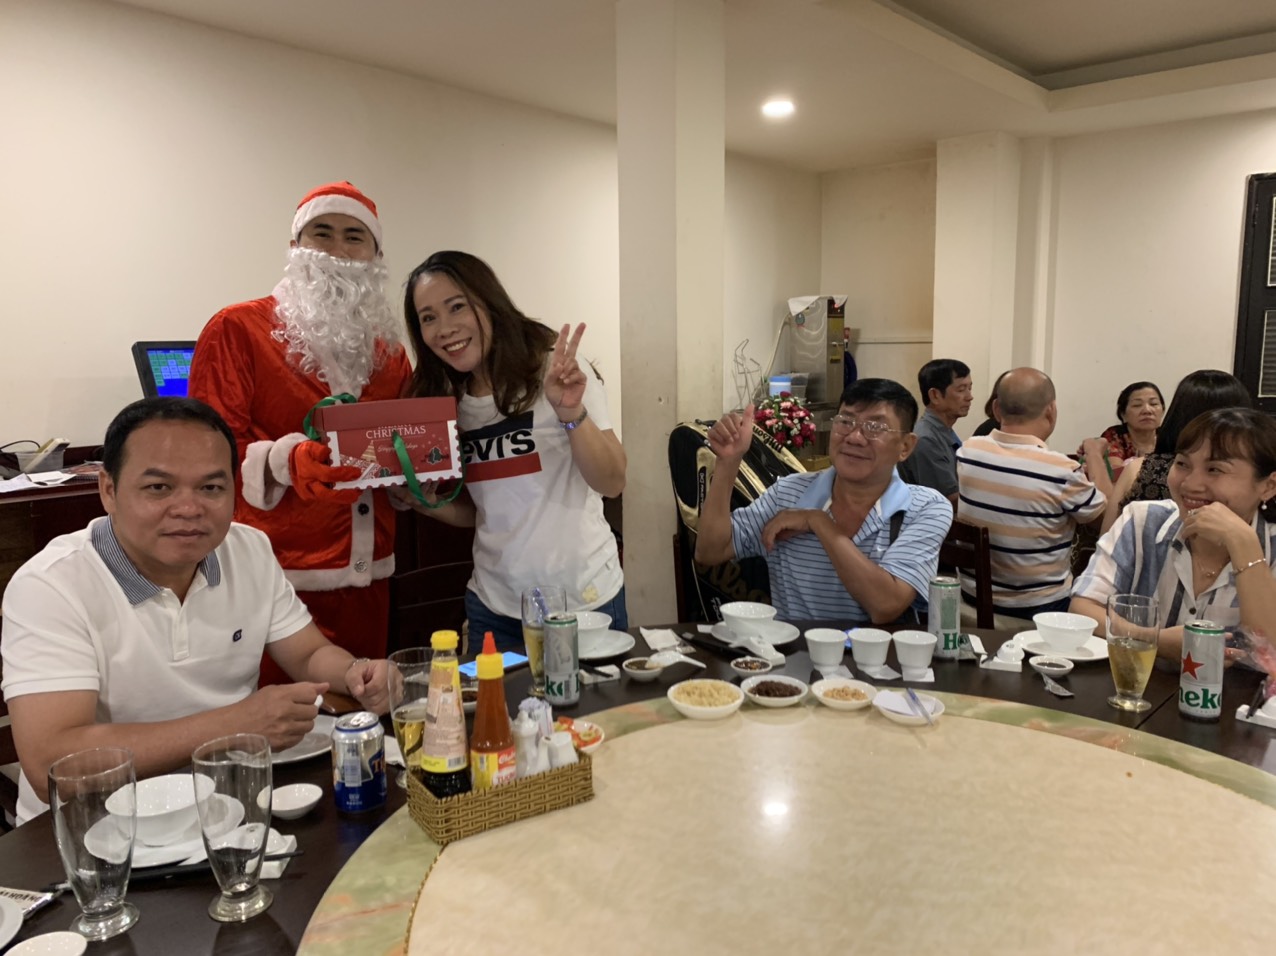 Noel năm 2019 khách đến đông đúc và nhận được quà từ ông già Noel đây - Haihoangbinhtan.com7